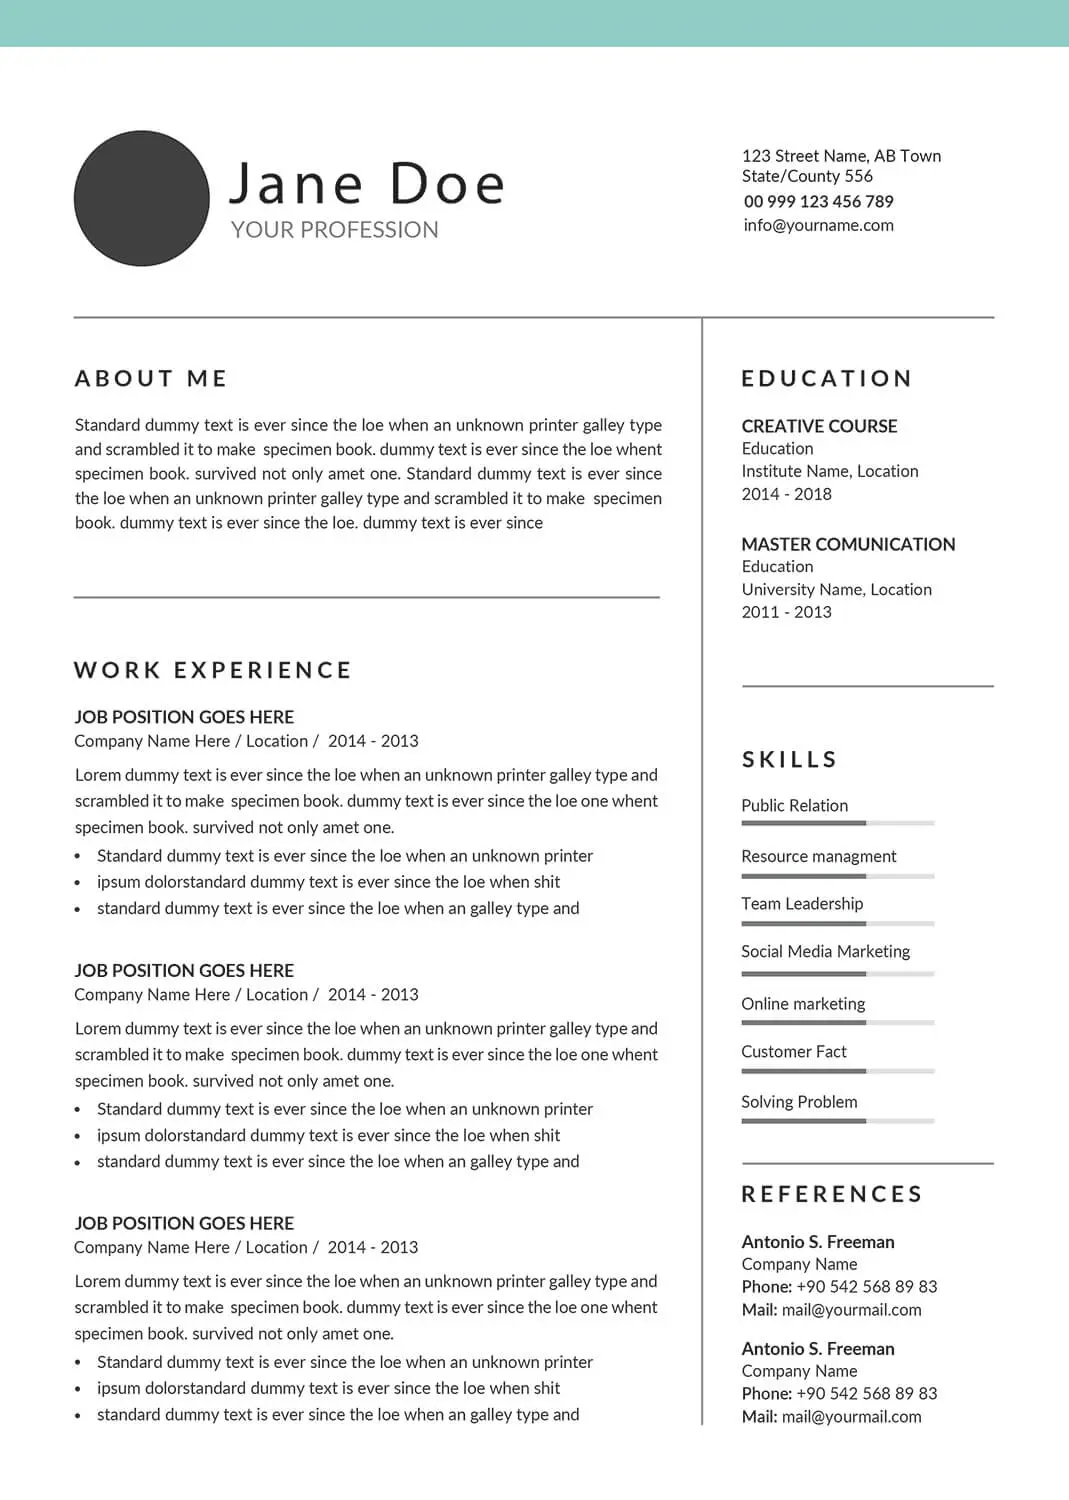 sales-resume